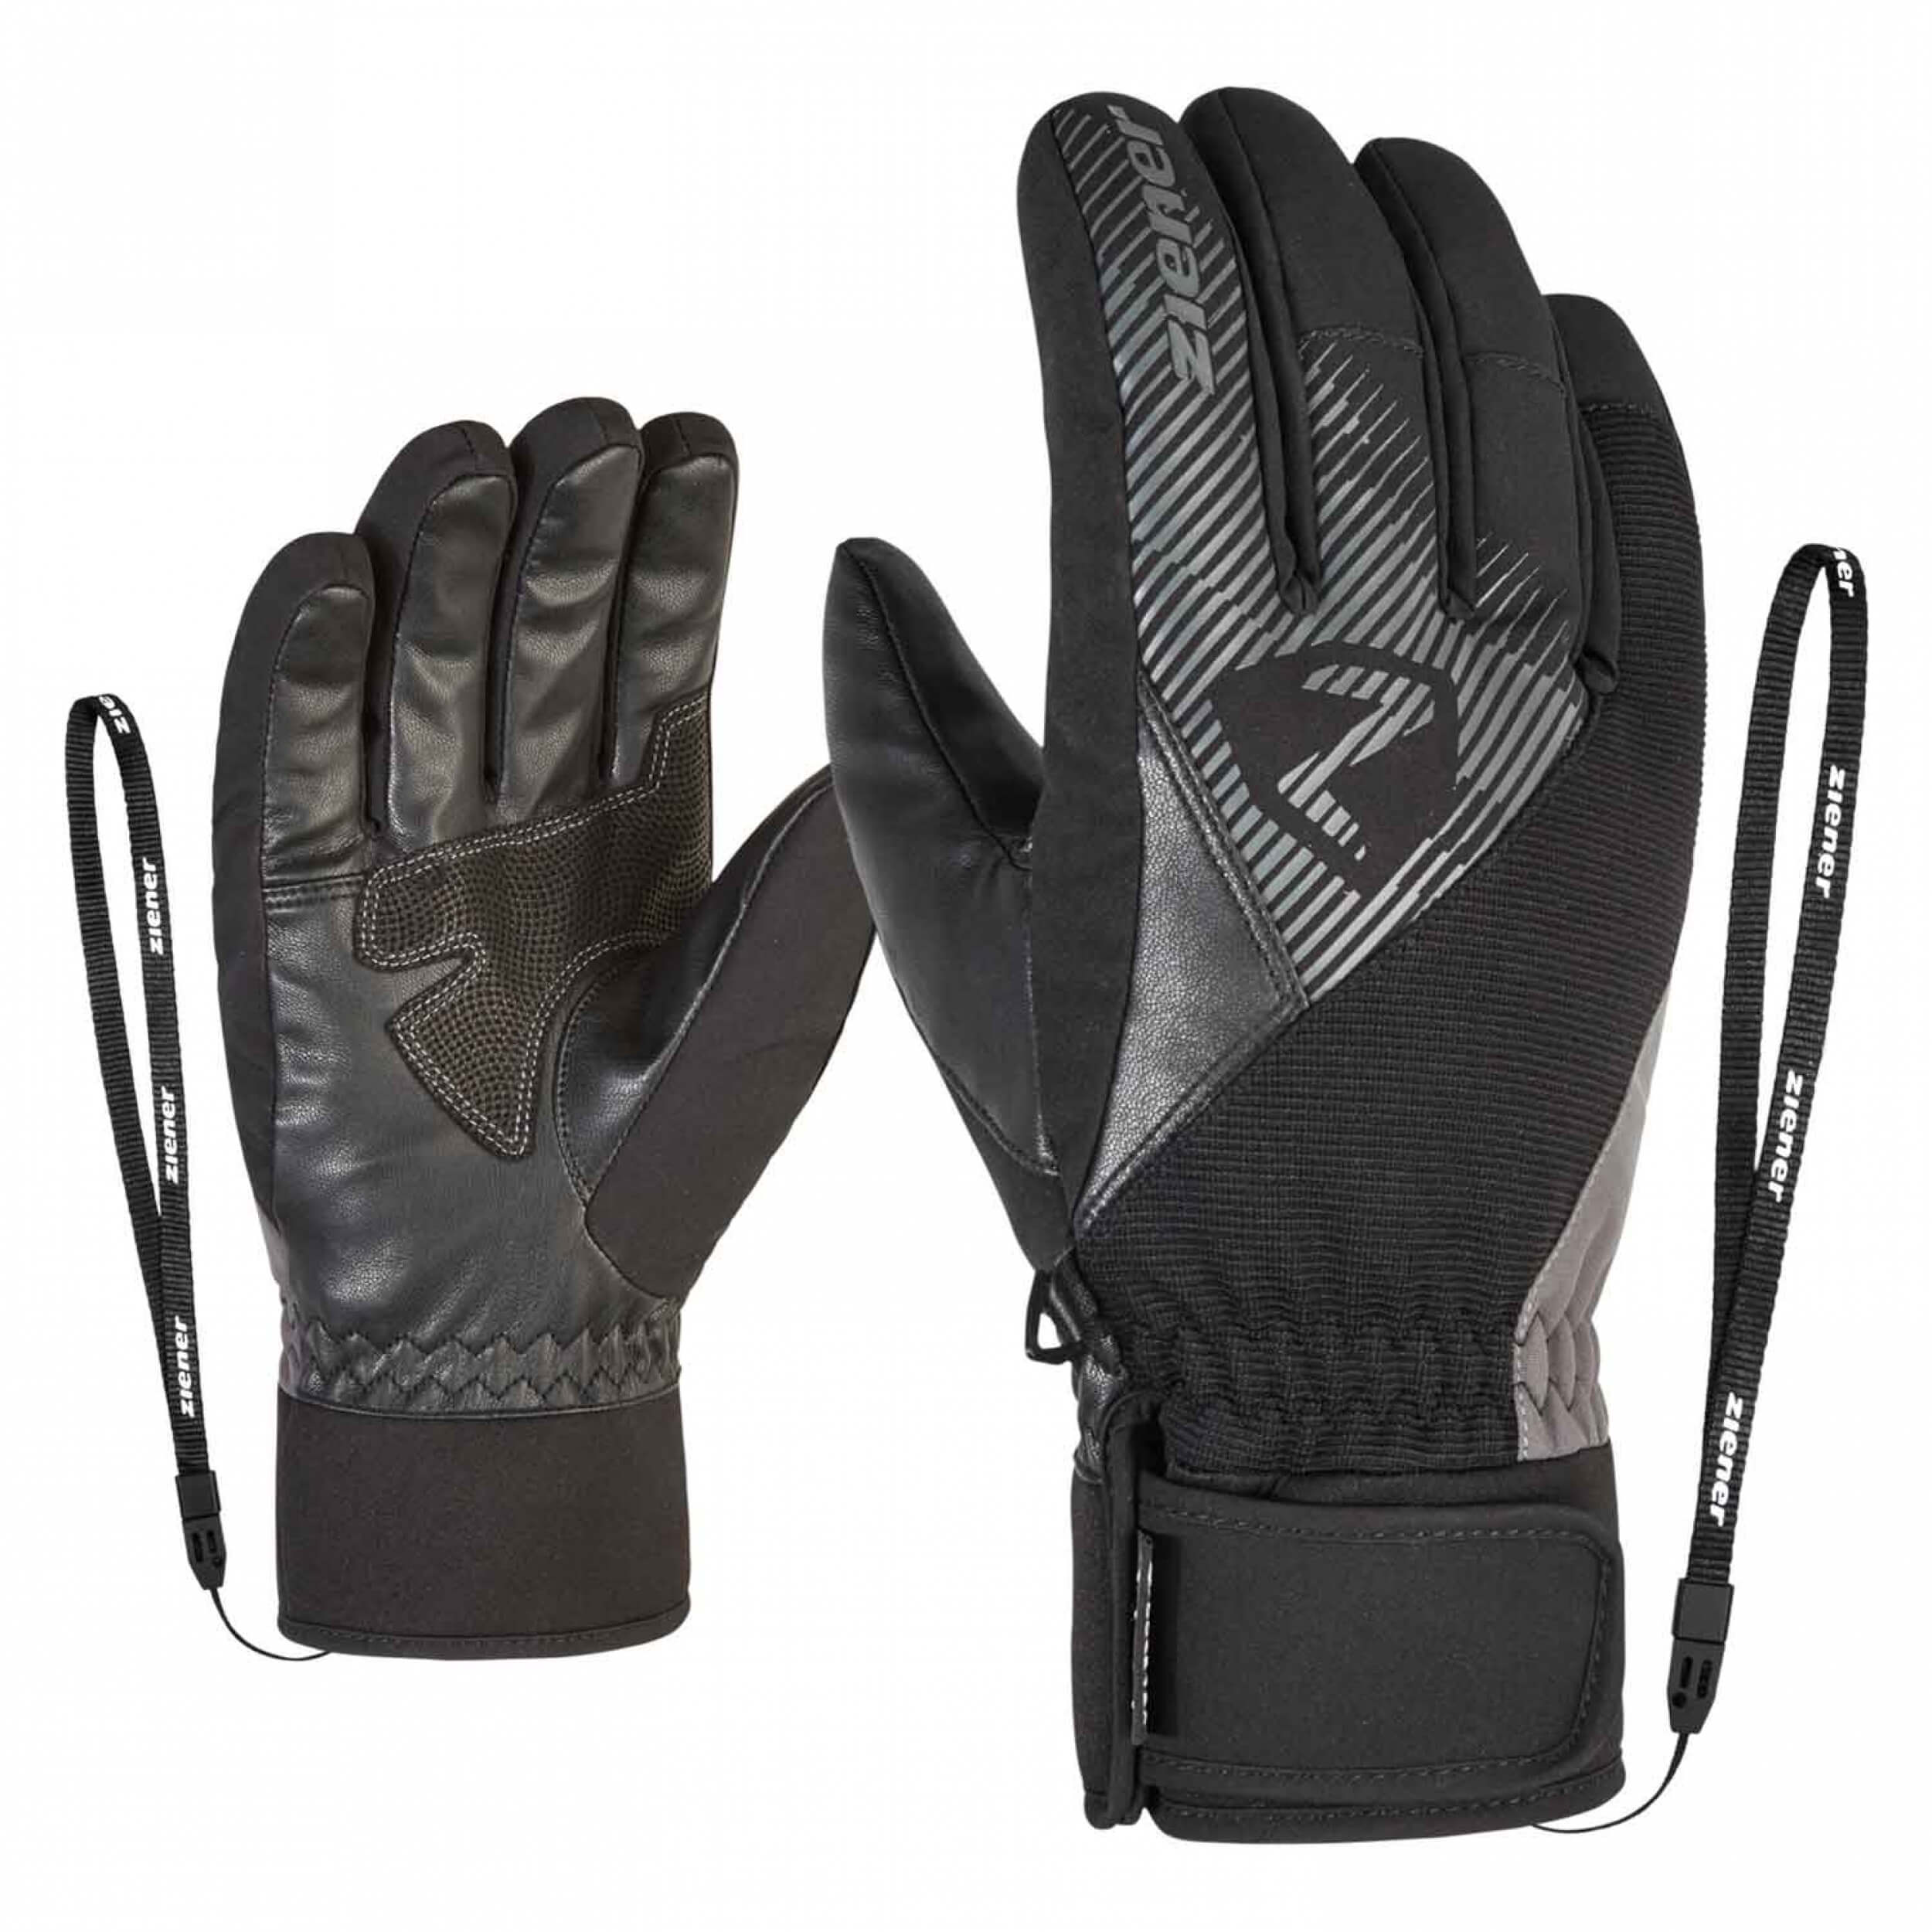 ZIENER Ski Handschuhe Gido GORETEX schwarz grau 757